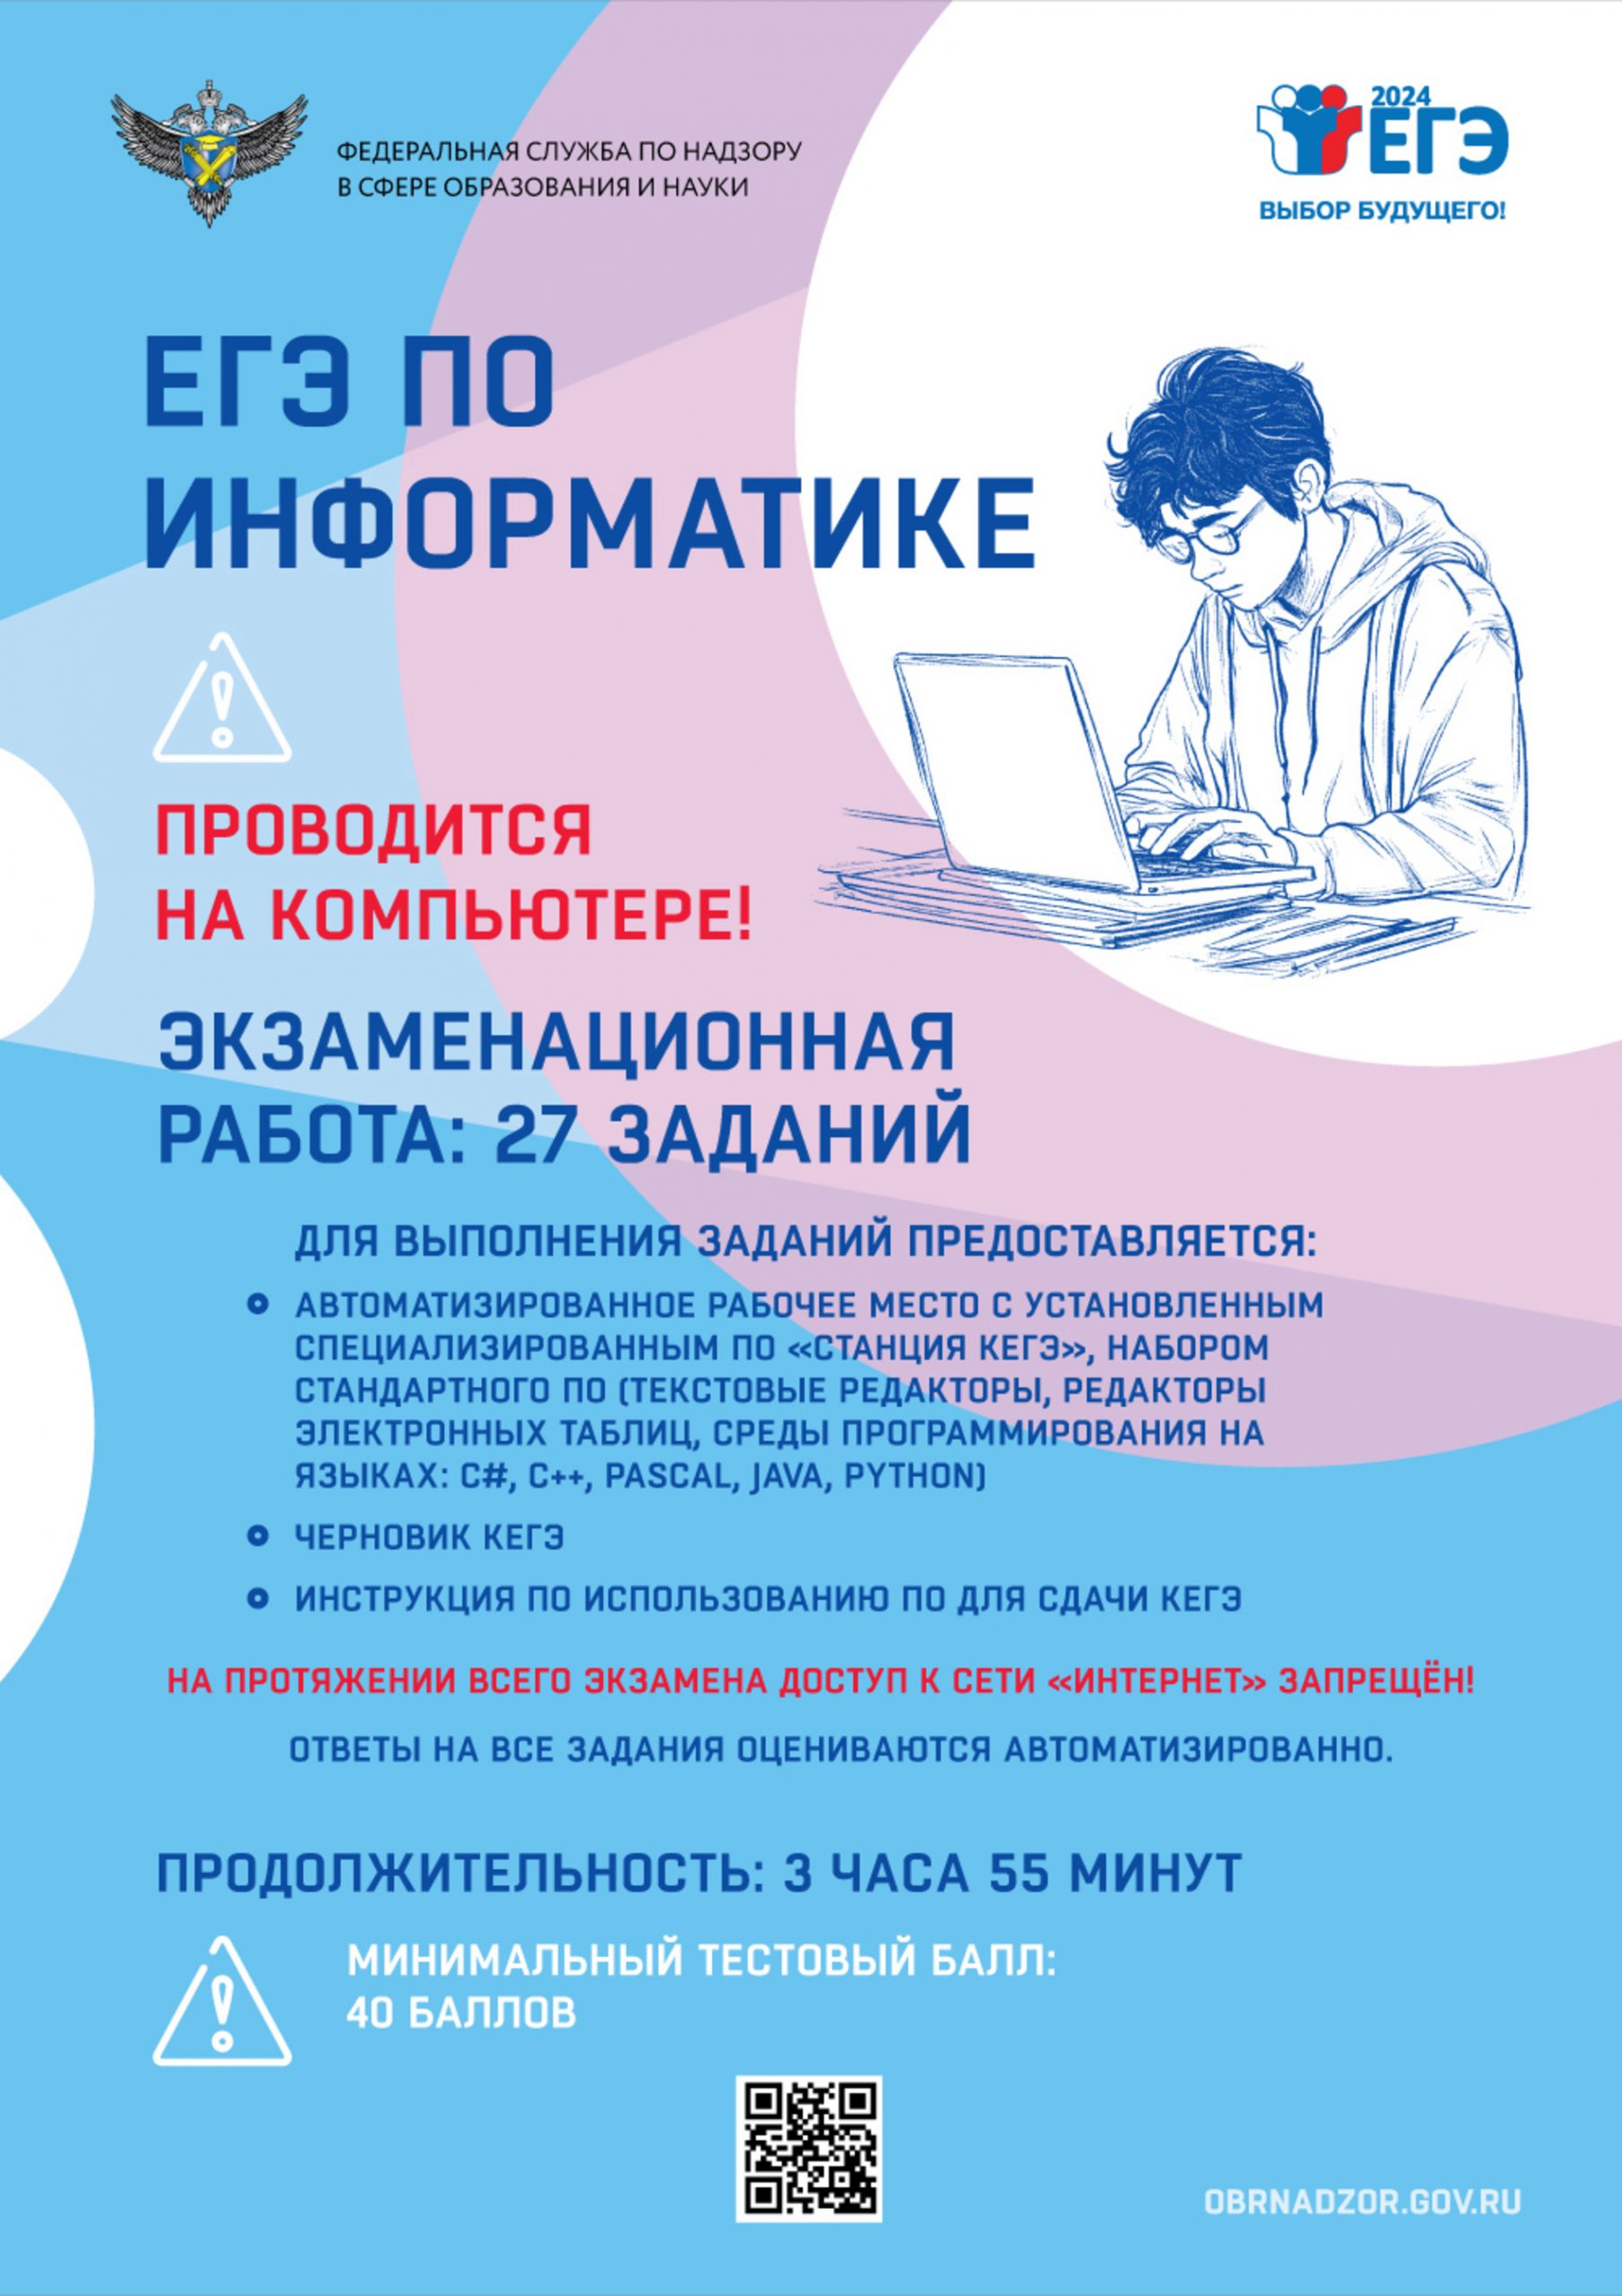 ЕГЭ по информатике / 2024 –  Информационный плакат